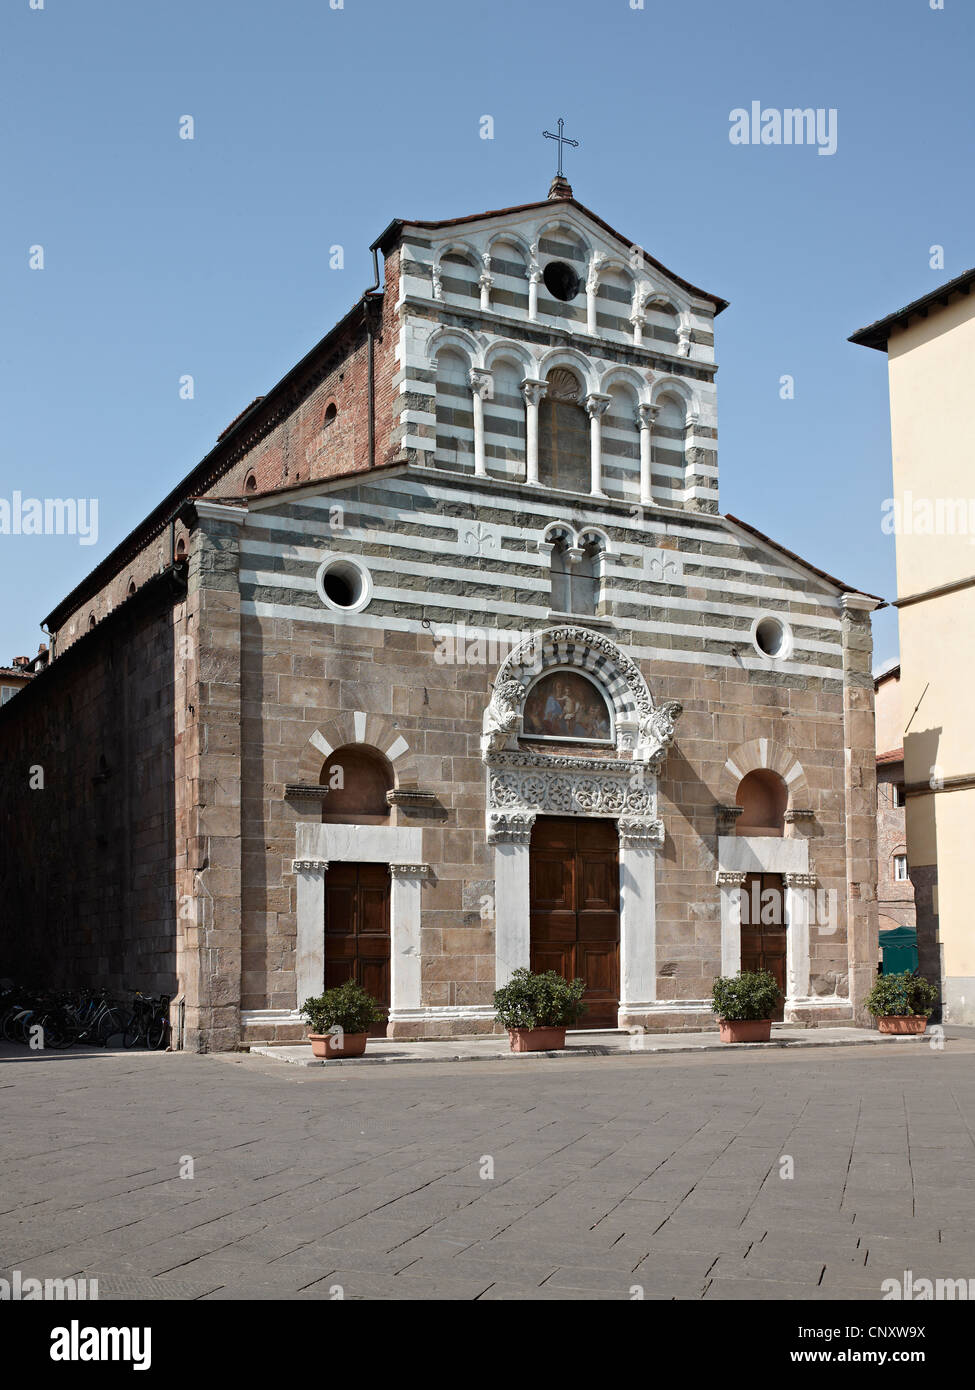 Église de San Giusto, Lucca, Italie. La façade du 12ème siècle avec des bandes noires et blanches Banque D'Images